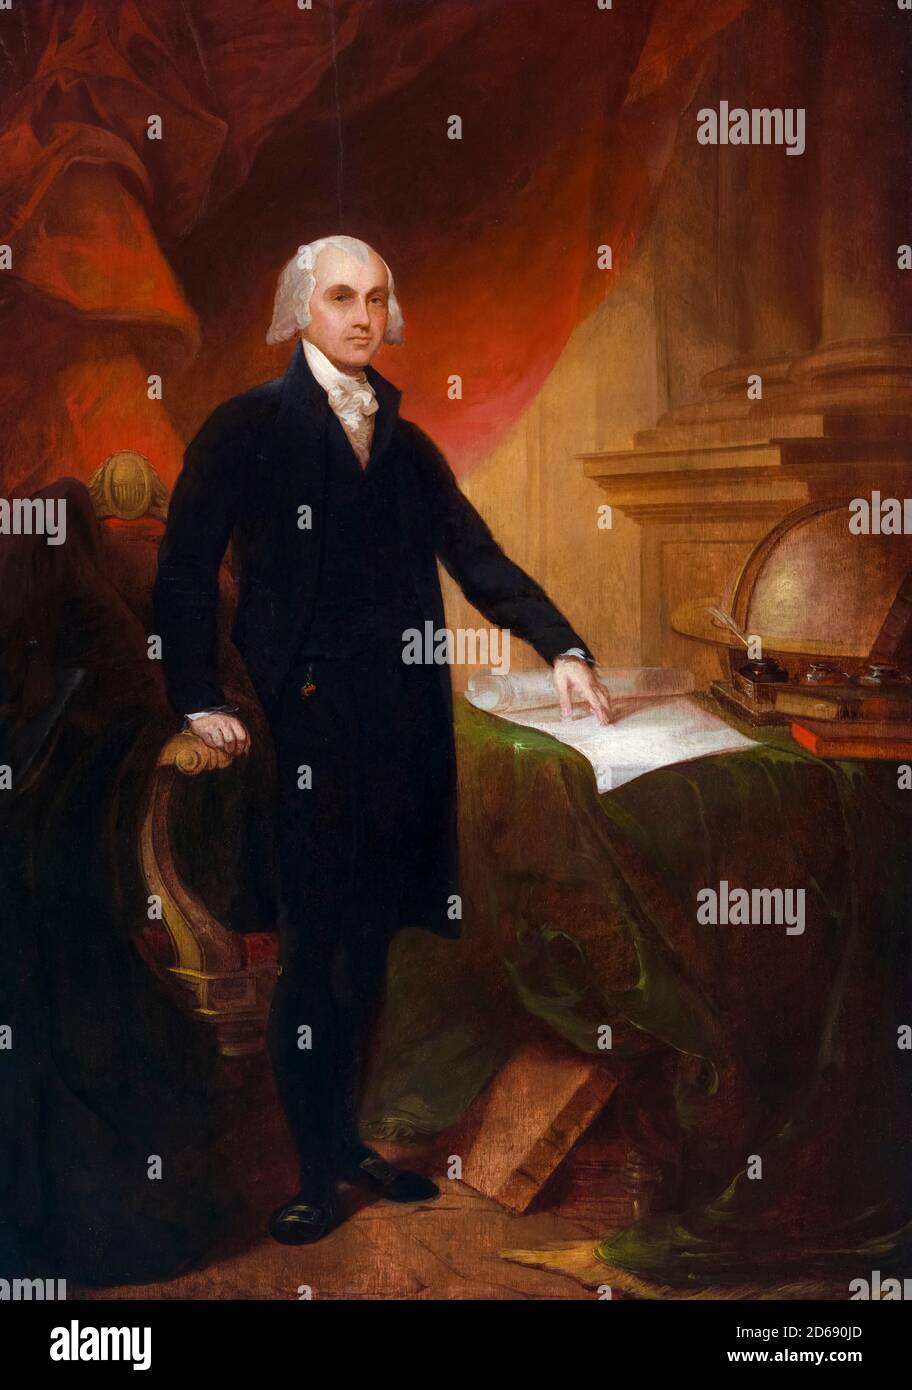 James Madison (1751-1836), homme d'État américain et père fondateur qui a servi comme quatrième président des États-Unis, portrait peint par Thomas Sully après Gilbert Stuart, 1809 Banque D'Images